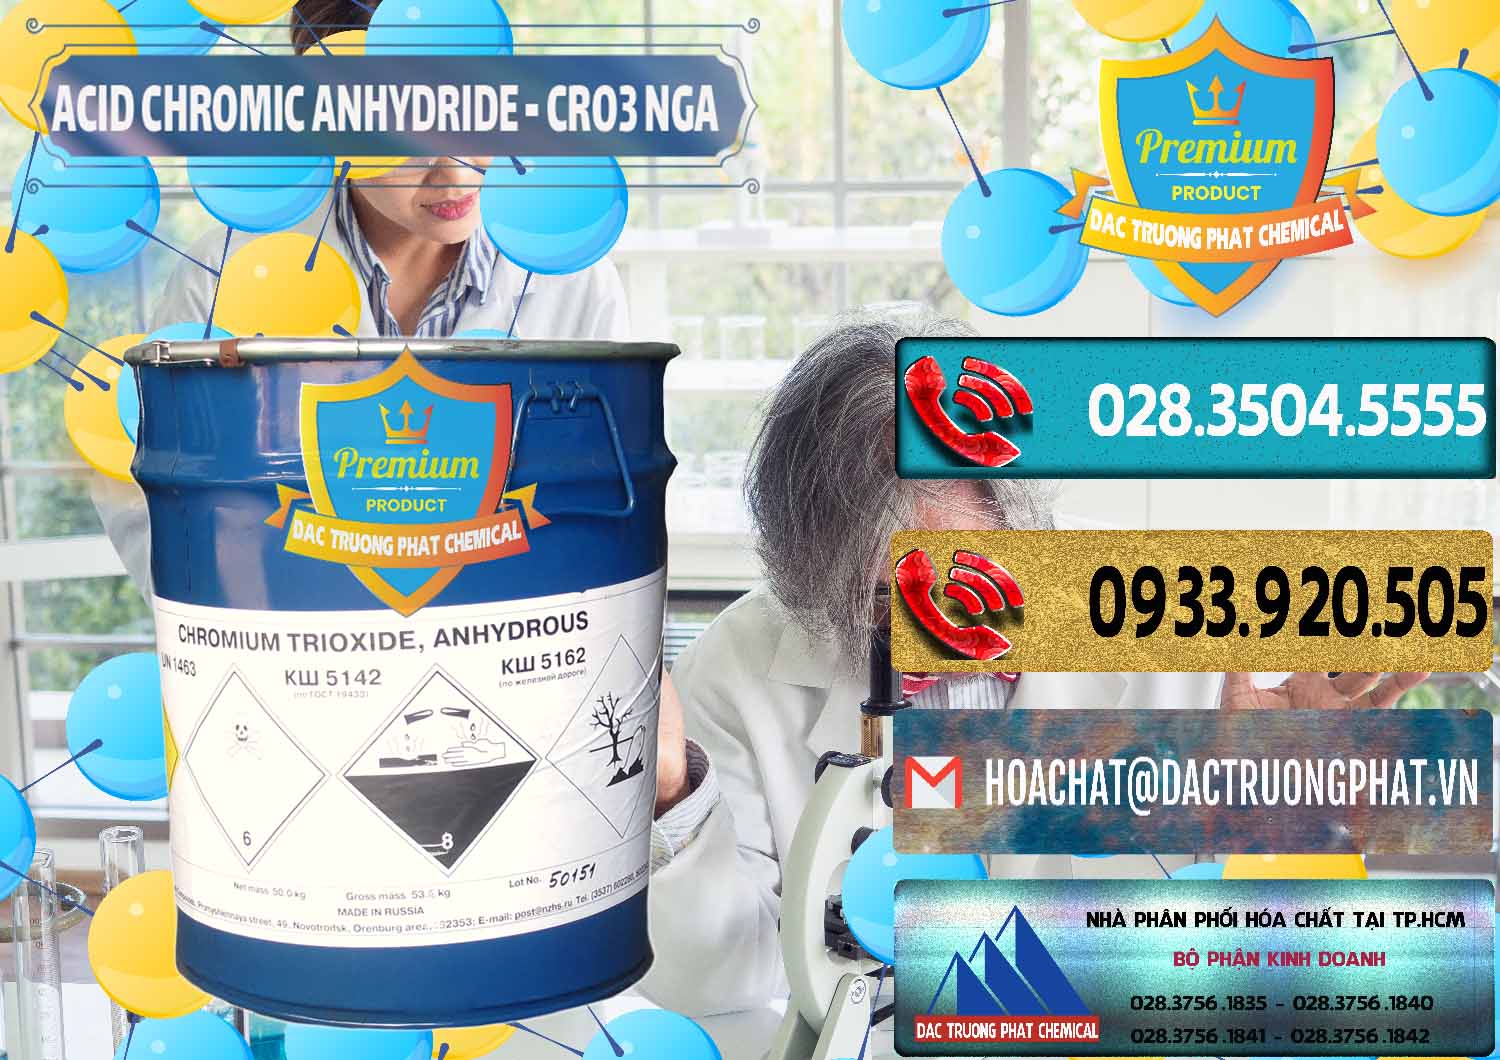 Công ty nhập khẩu và bán Acid Chromic Anhydride - Cromic CRO3 Nga Russia - 0006 - Cty bán - cung cấp hóa chất tại TP.HCM - hoachatdetnhuom.com